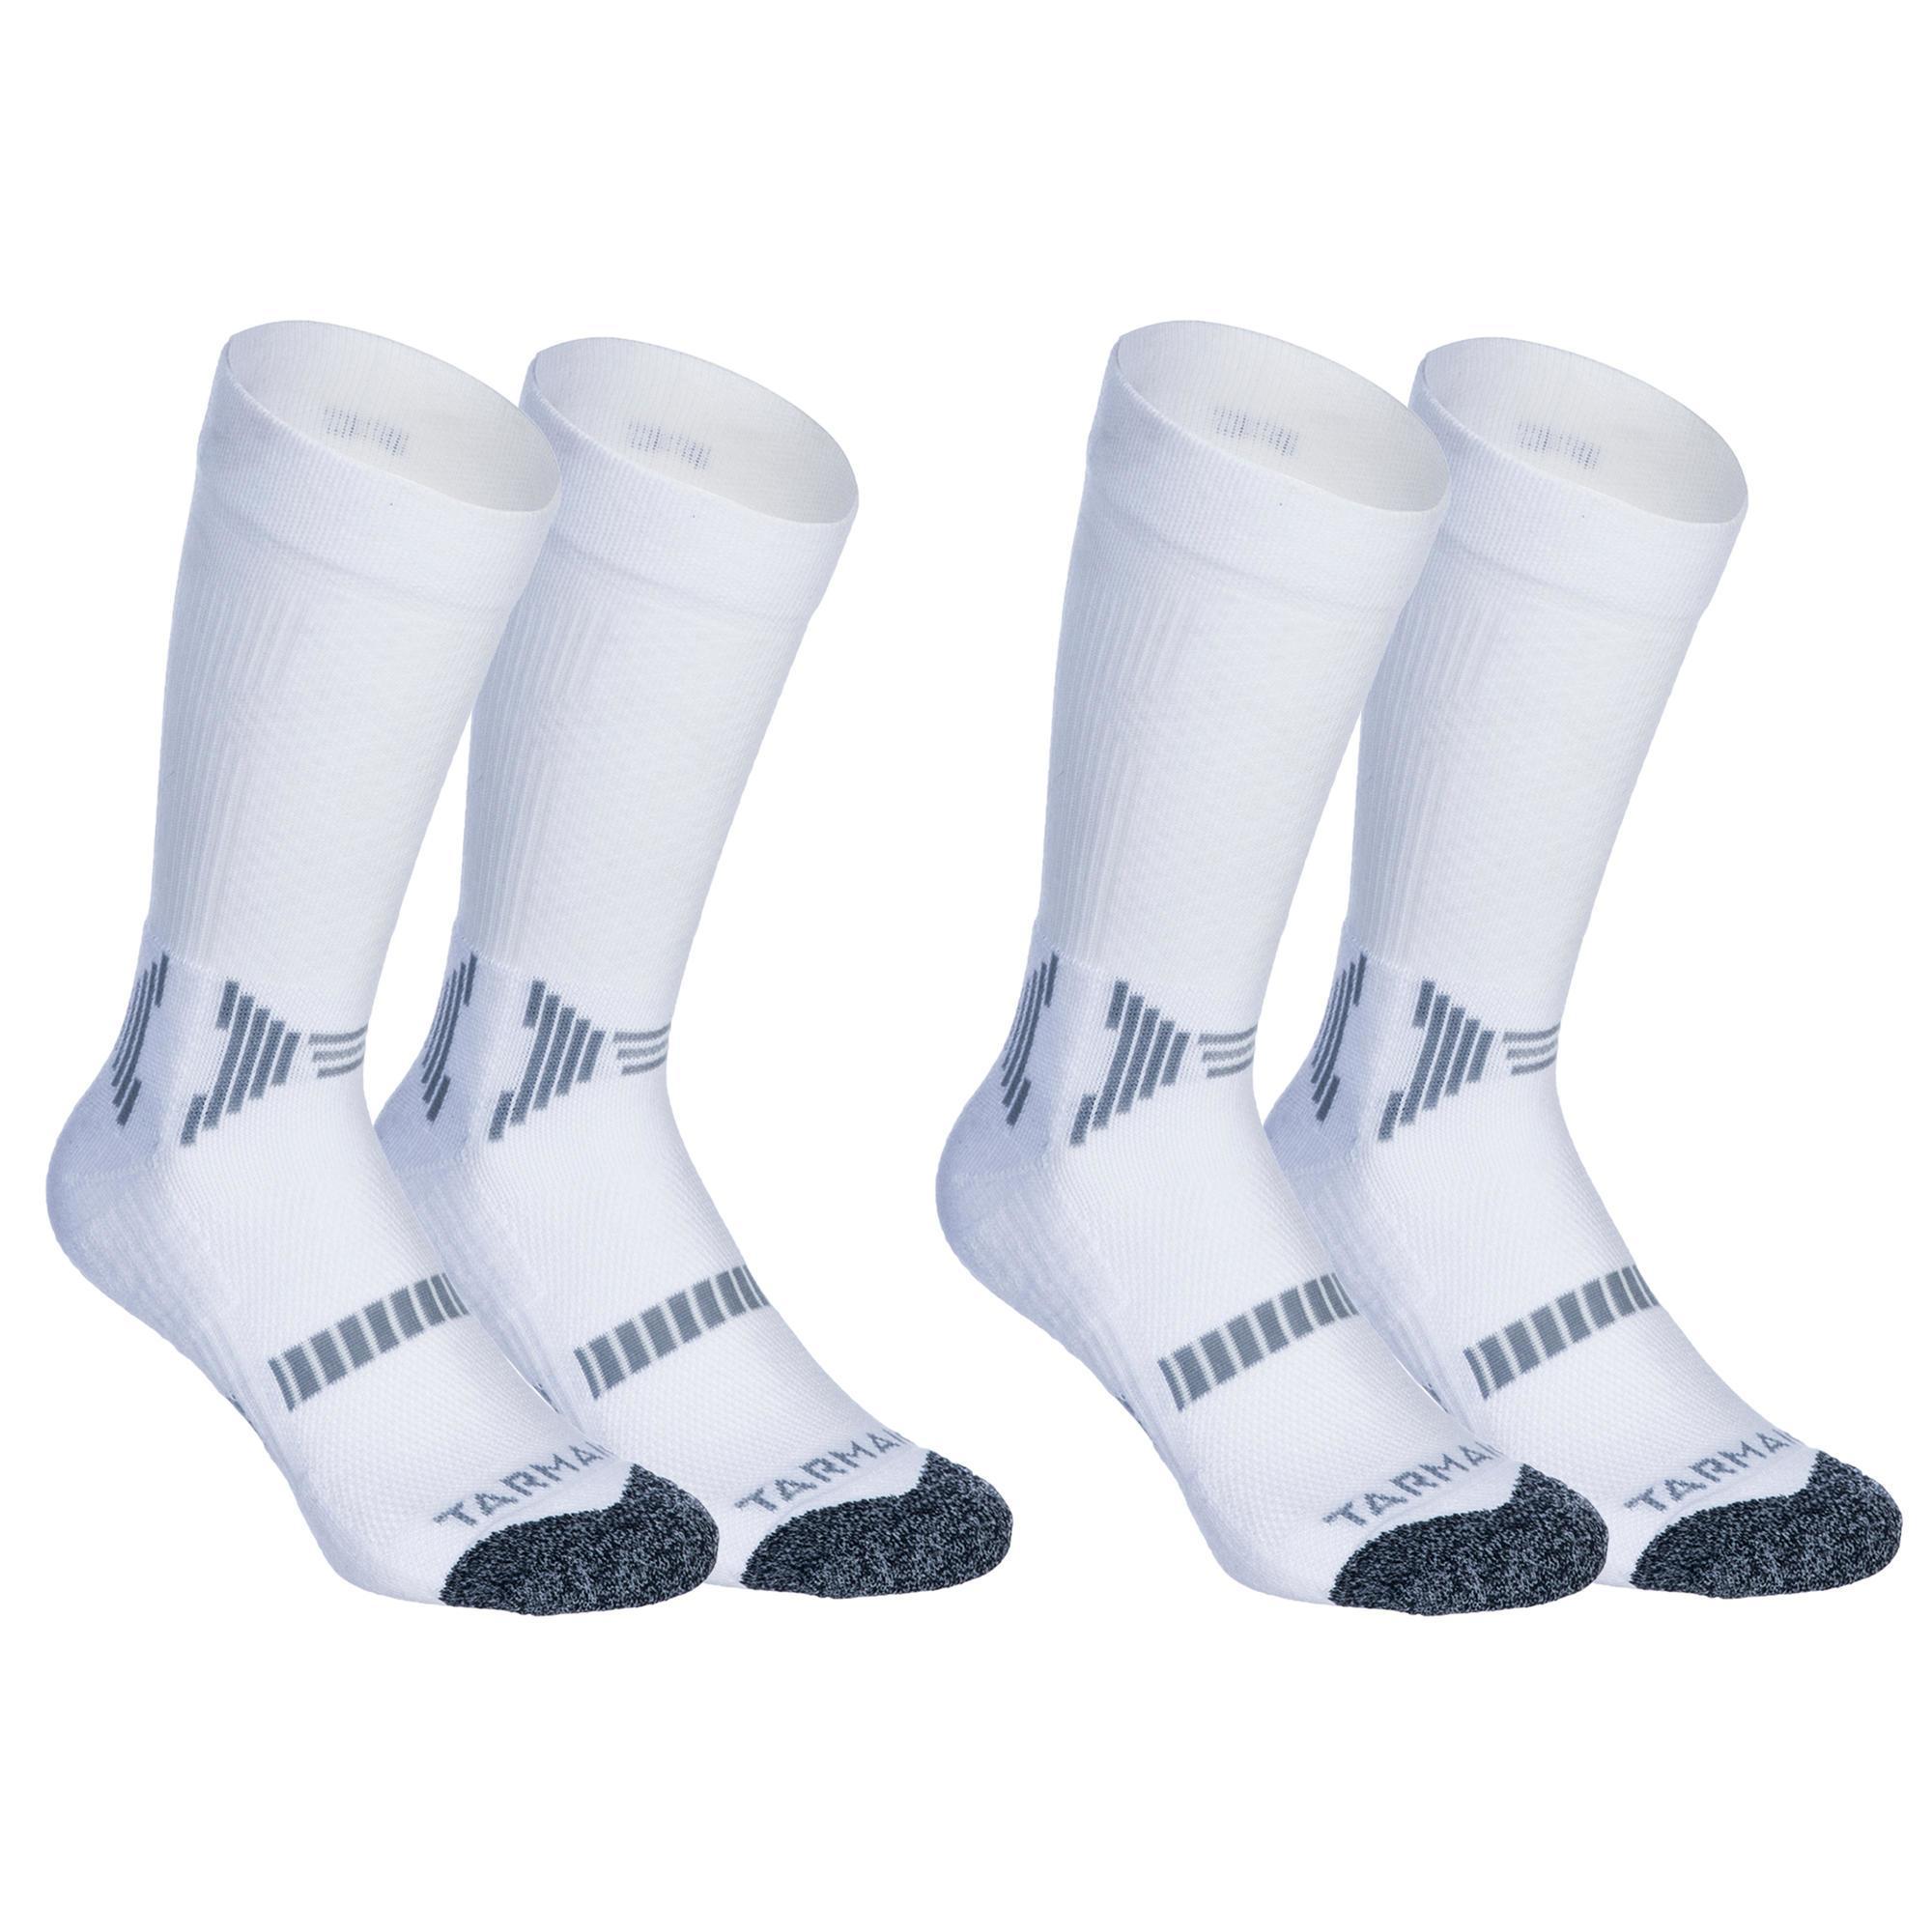 decathlon women's socks